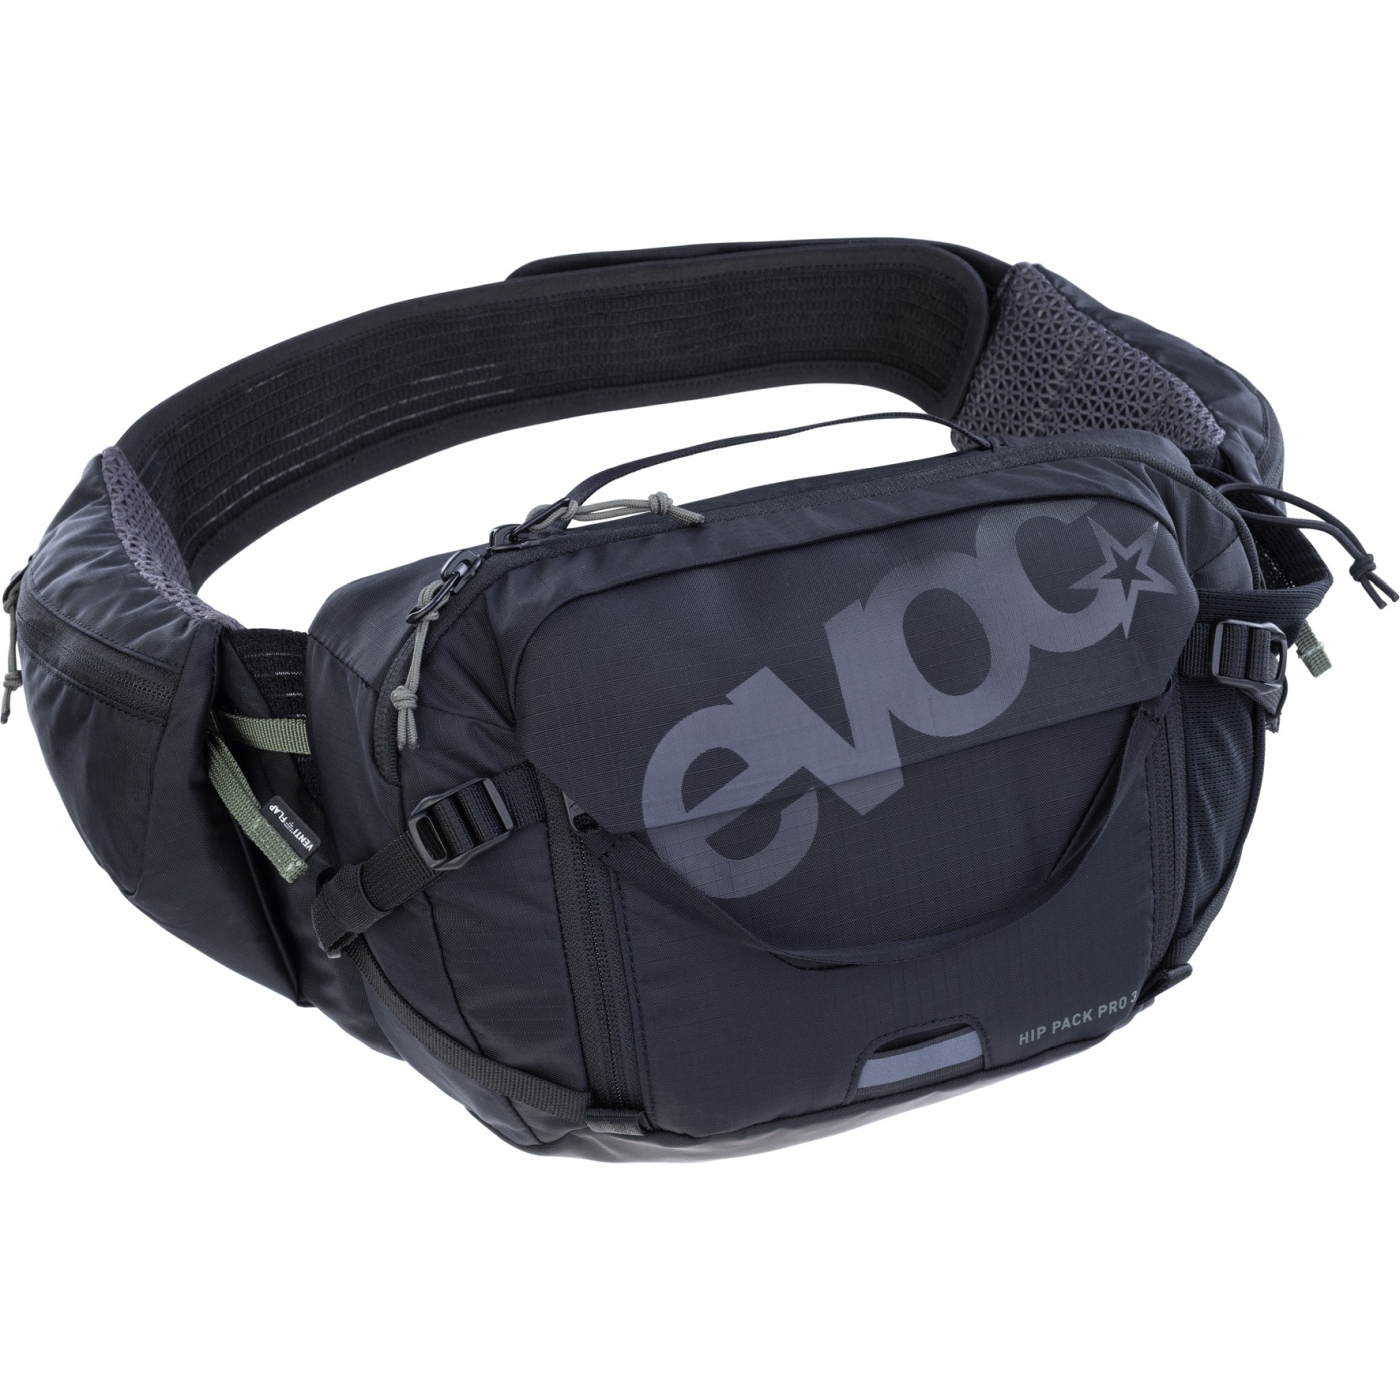 Produktbild von EVOC Hip Pack Pro Hüfttasche - 3 L - Schwarz